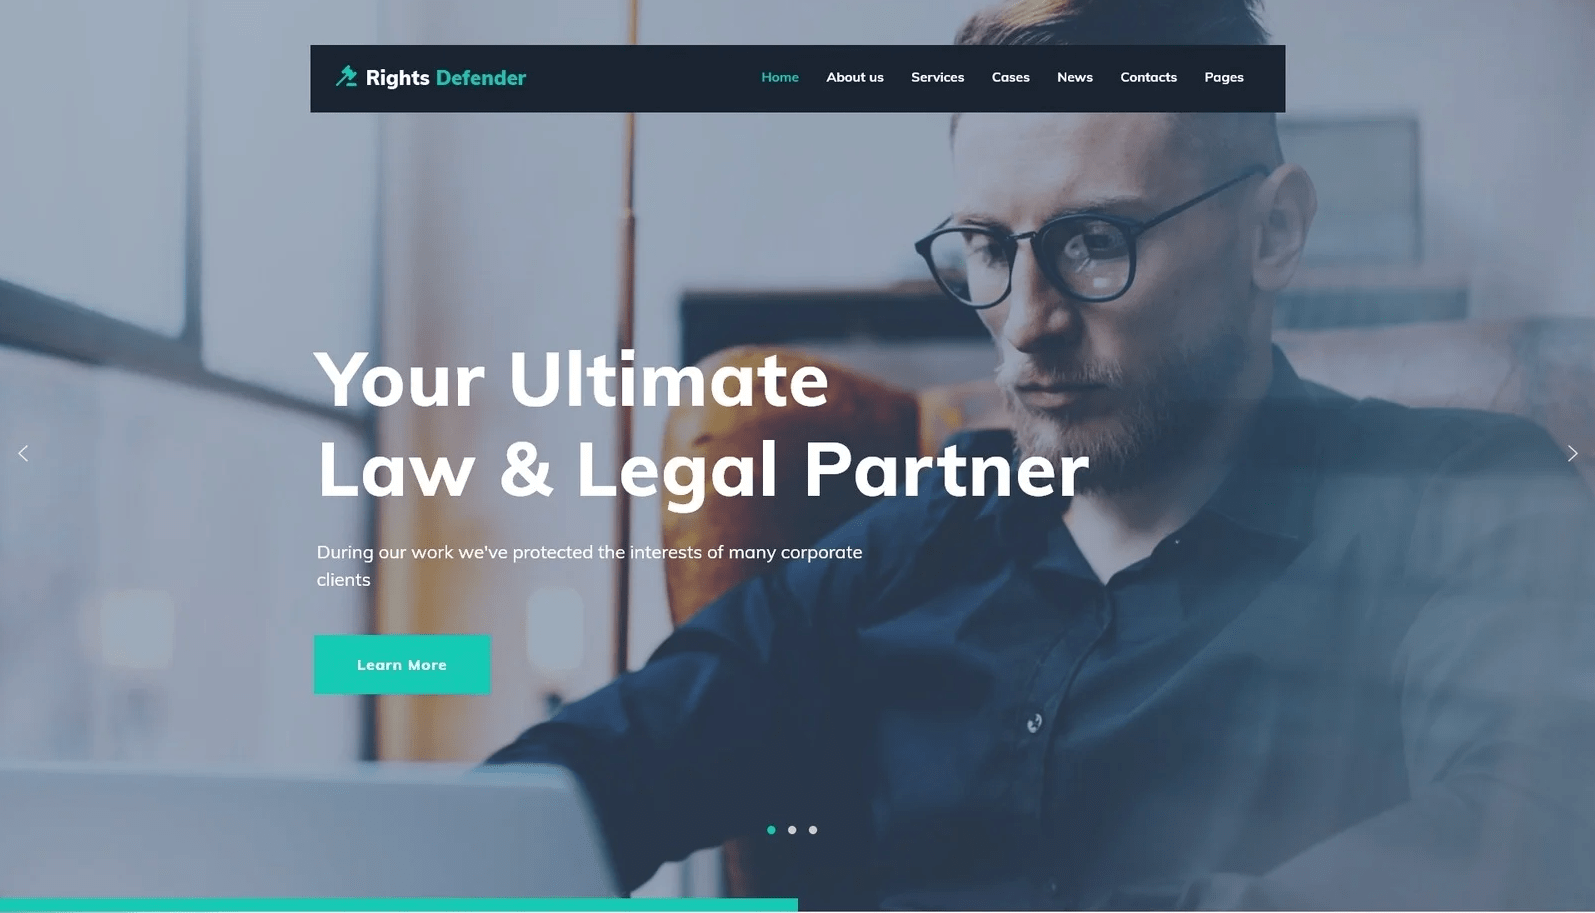 المدافع عن الحقوق - موضوع شركة المحامي وورد